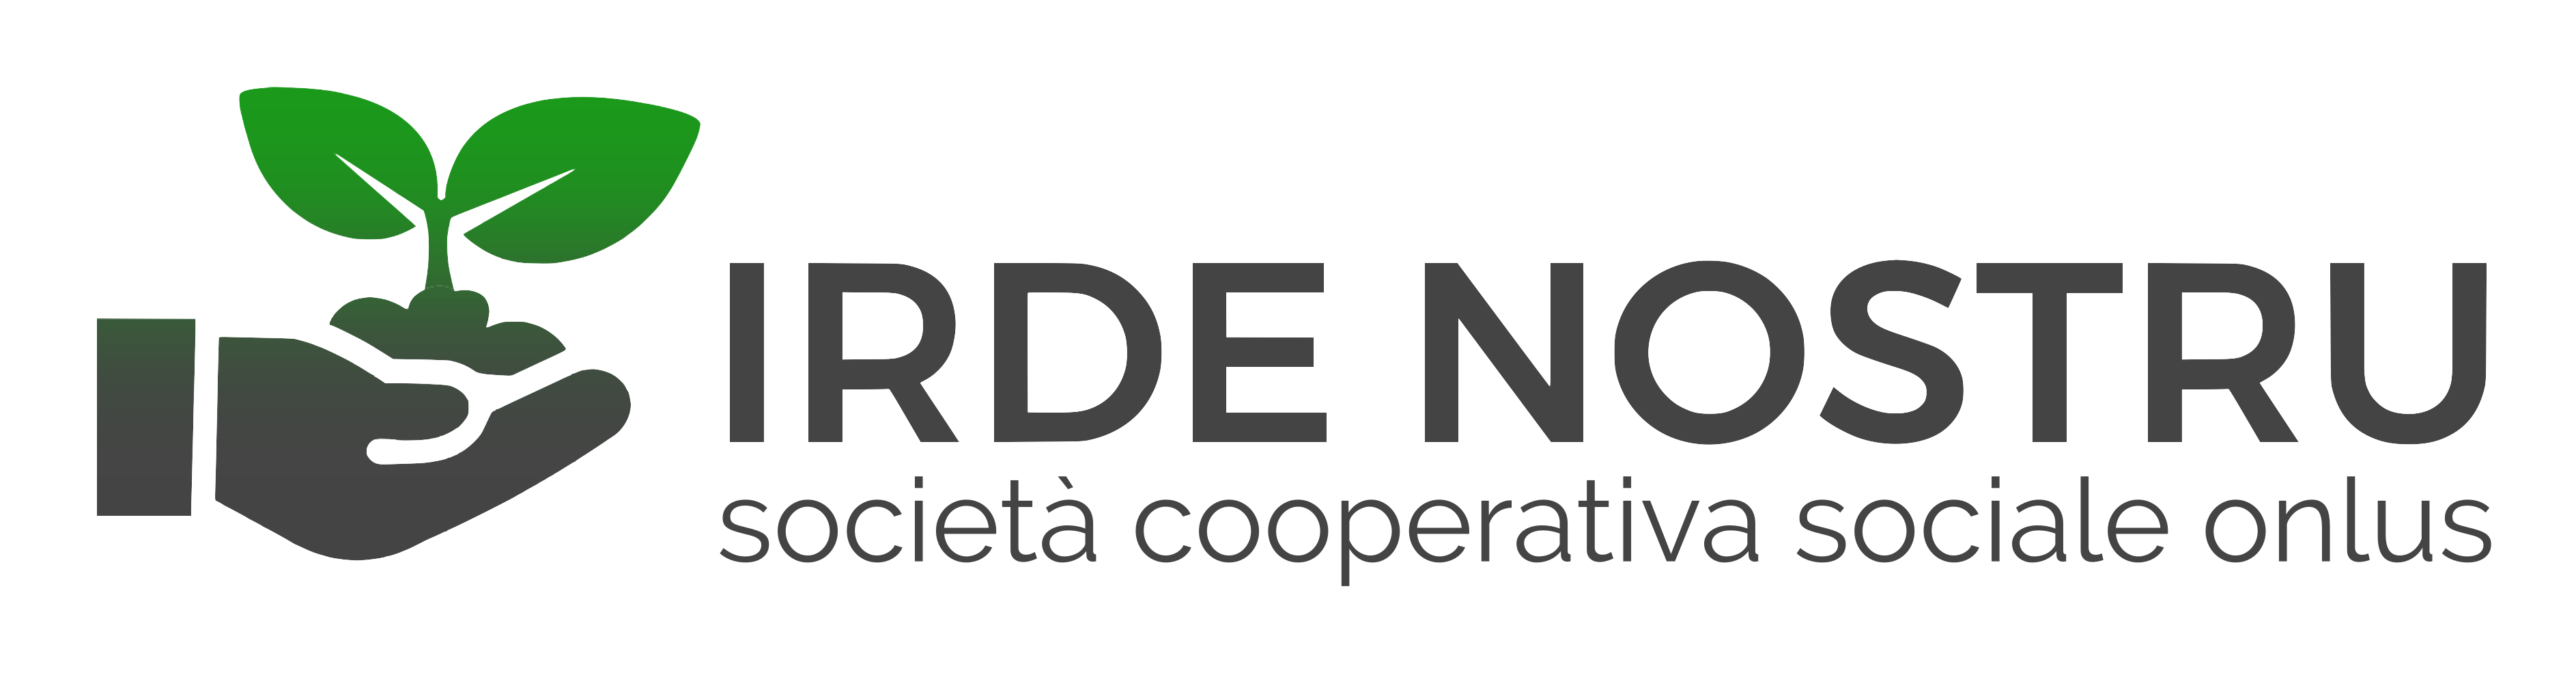 Irde Nostru - Dark Logo